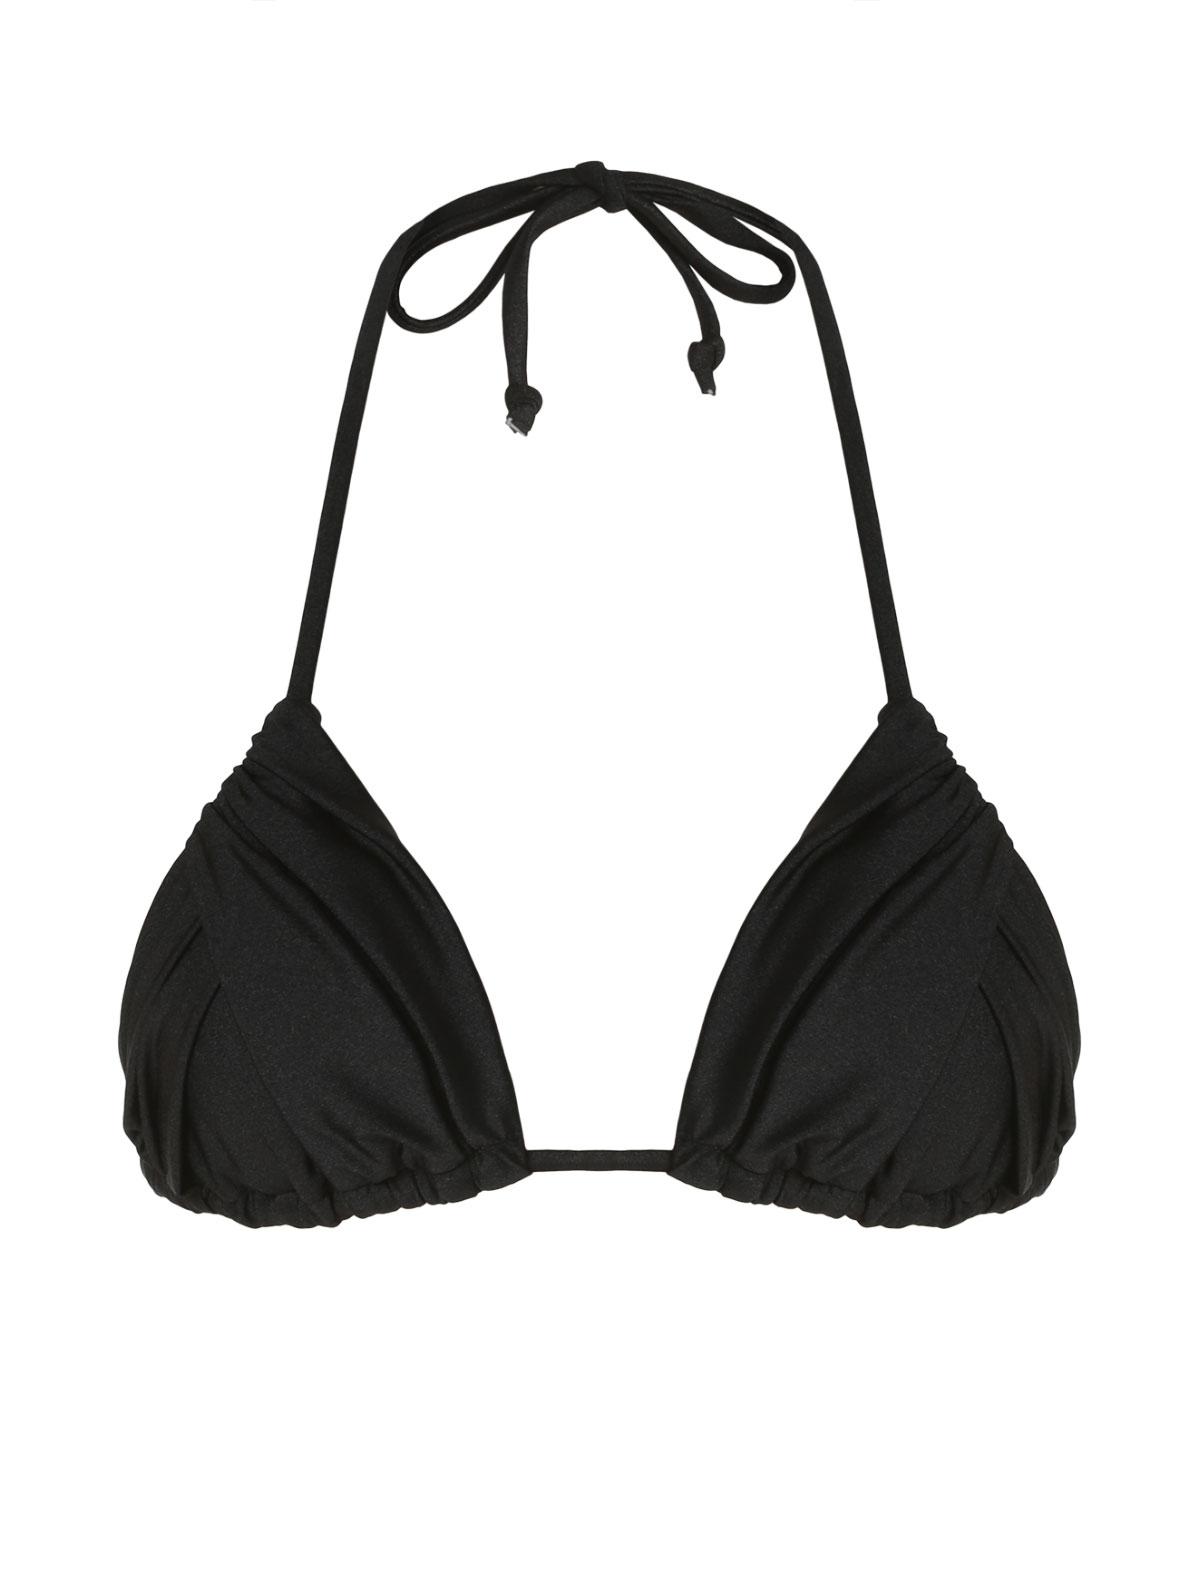 ZAFUL Halter Curtain String Bikini Top S Black